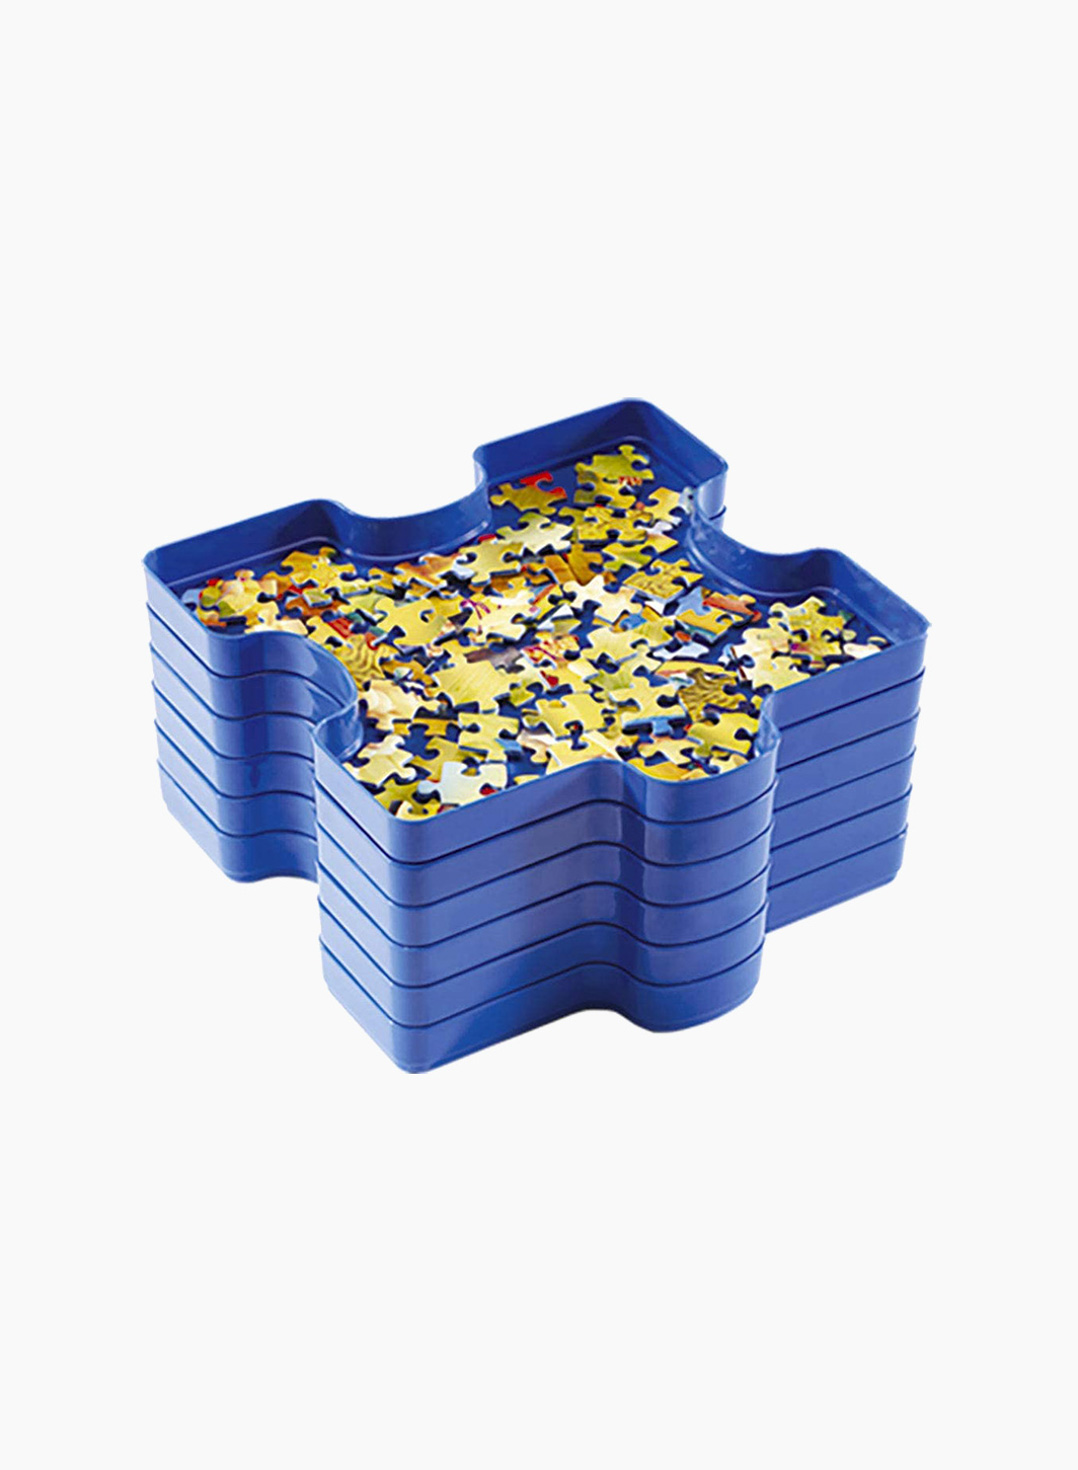 Ravensburger Puzzle sorting tray